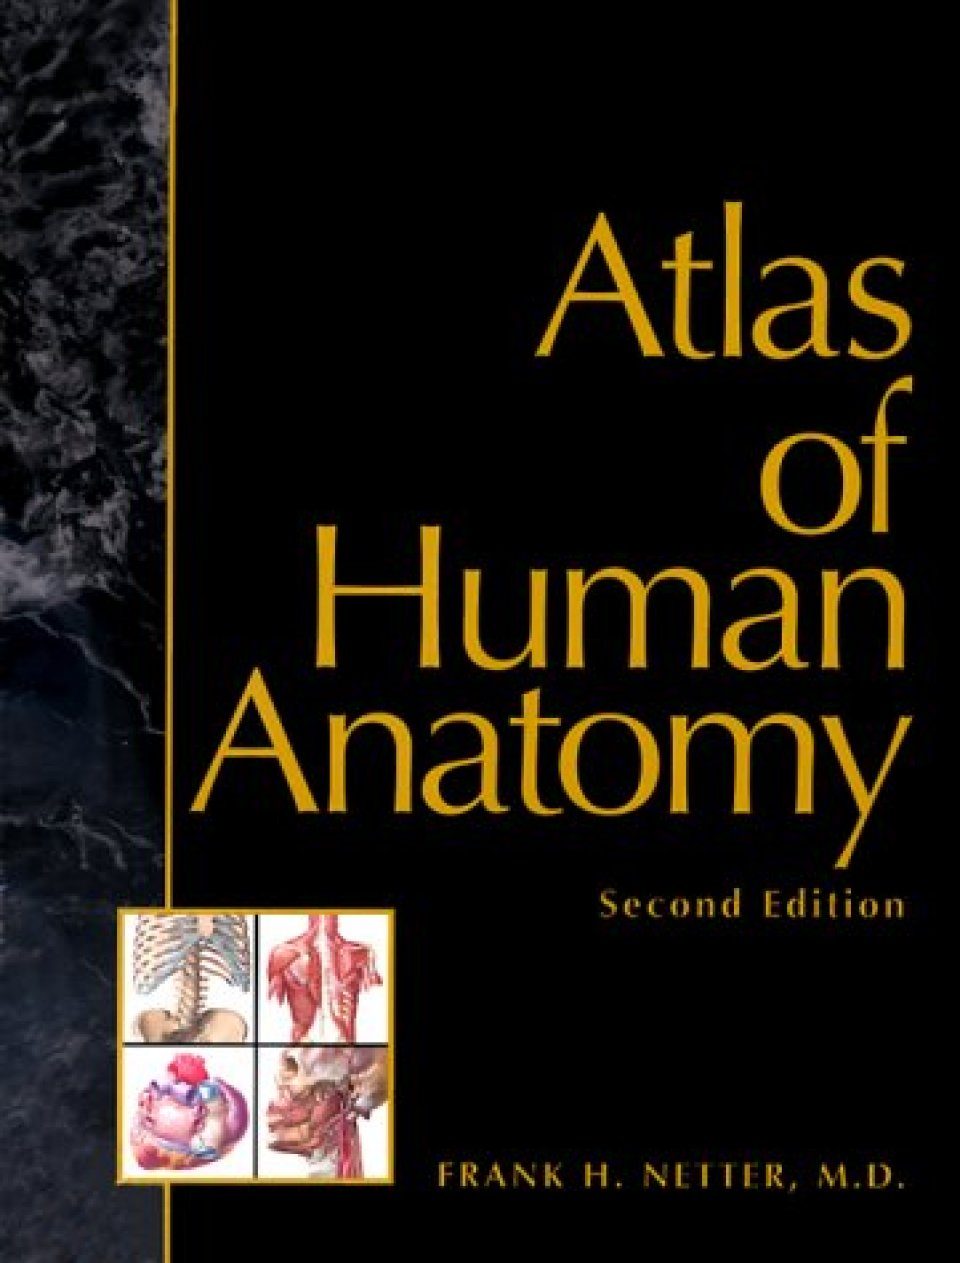 Атлас фрэнк. Atlas of Human Anatomy Frank h. Netter. Фрэнк Неттер атлас анатомии человека. Frank h. Netter - Atlas of Human Anatomy Amazon. Атлас анатомии человека Фрэнк Неттер 4 издание.